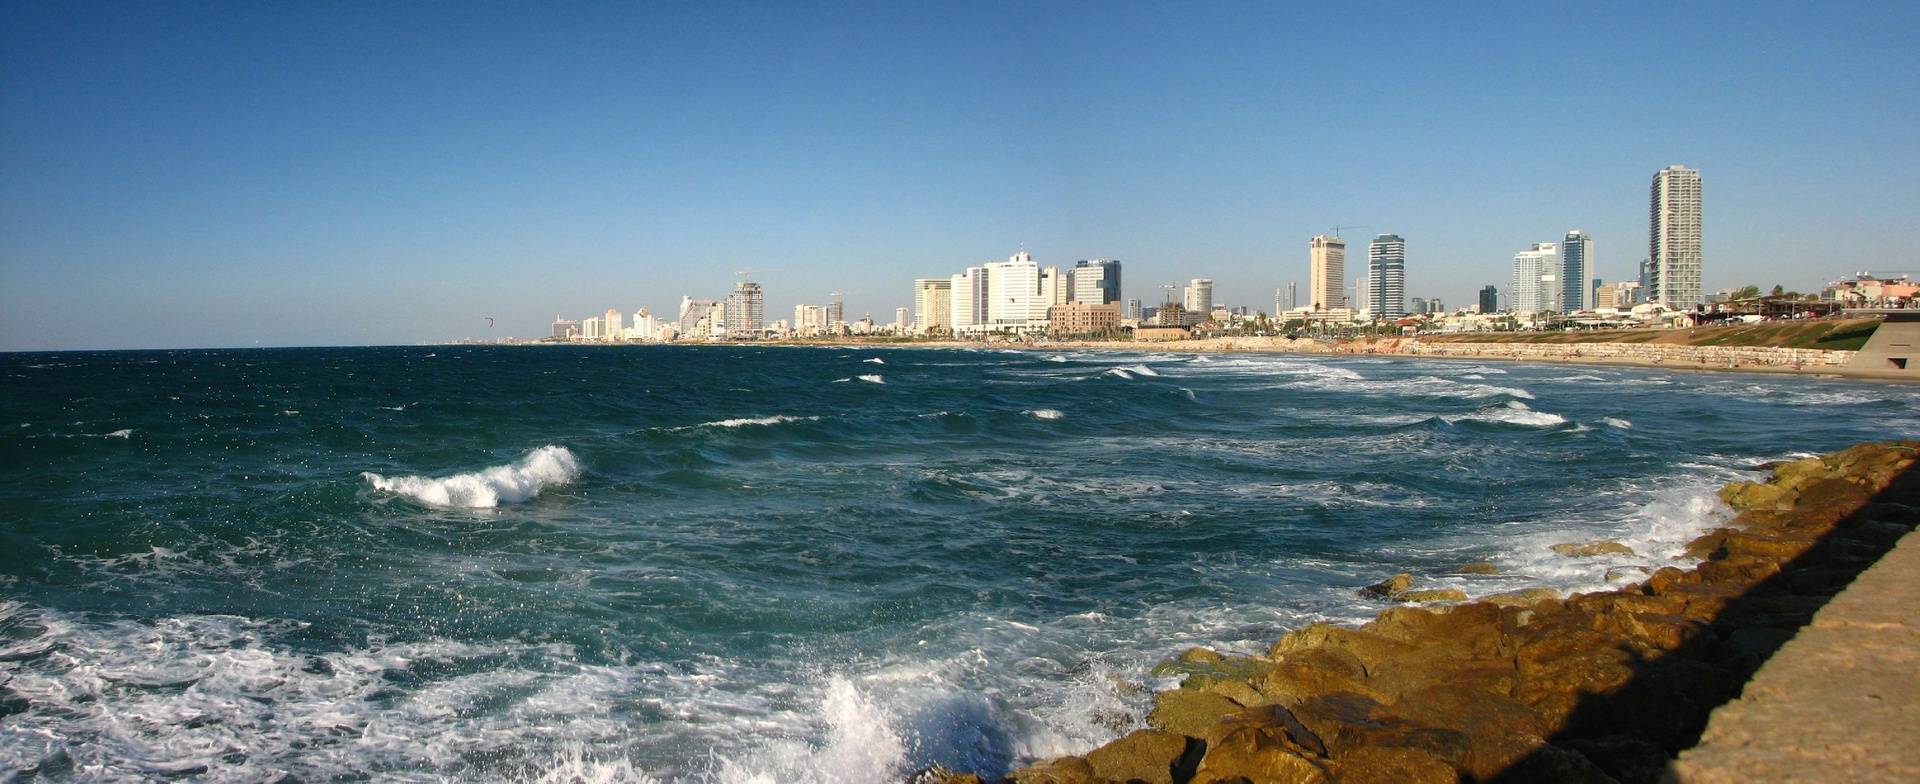 Tel Aviv on the Sea